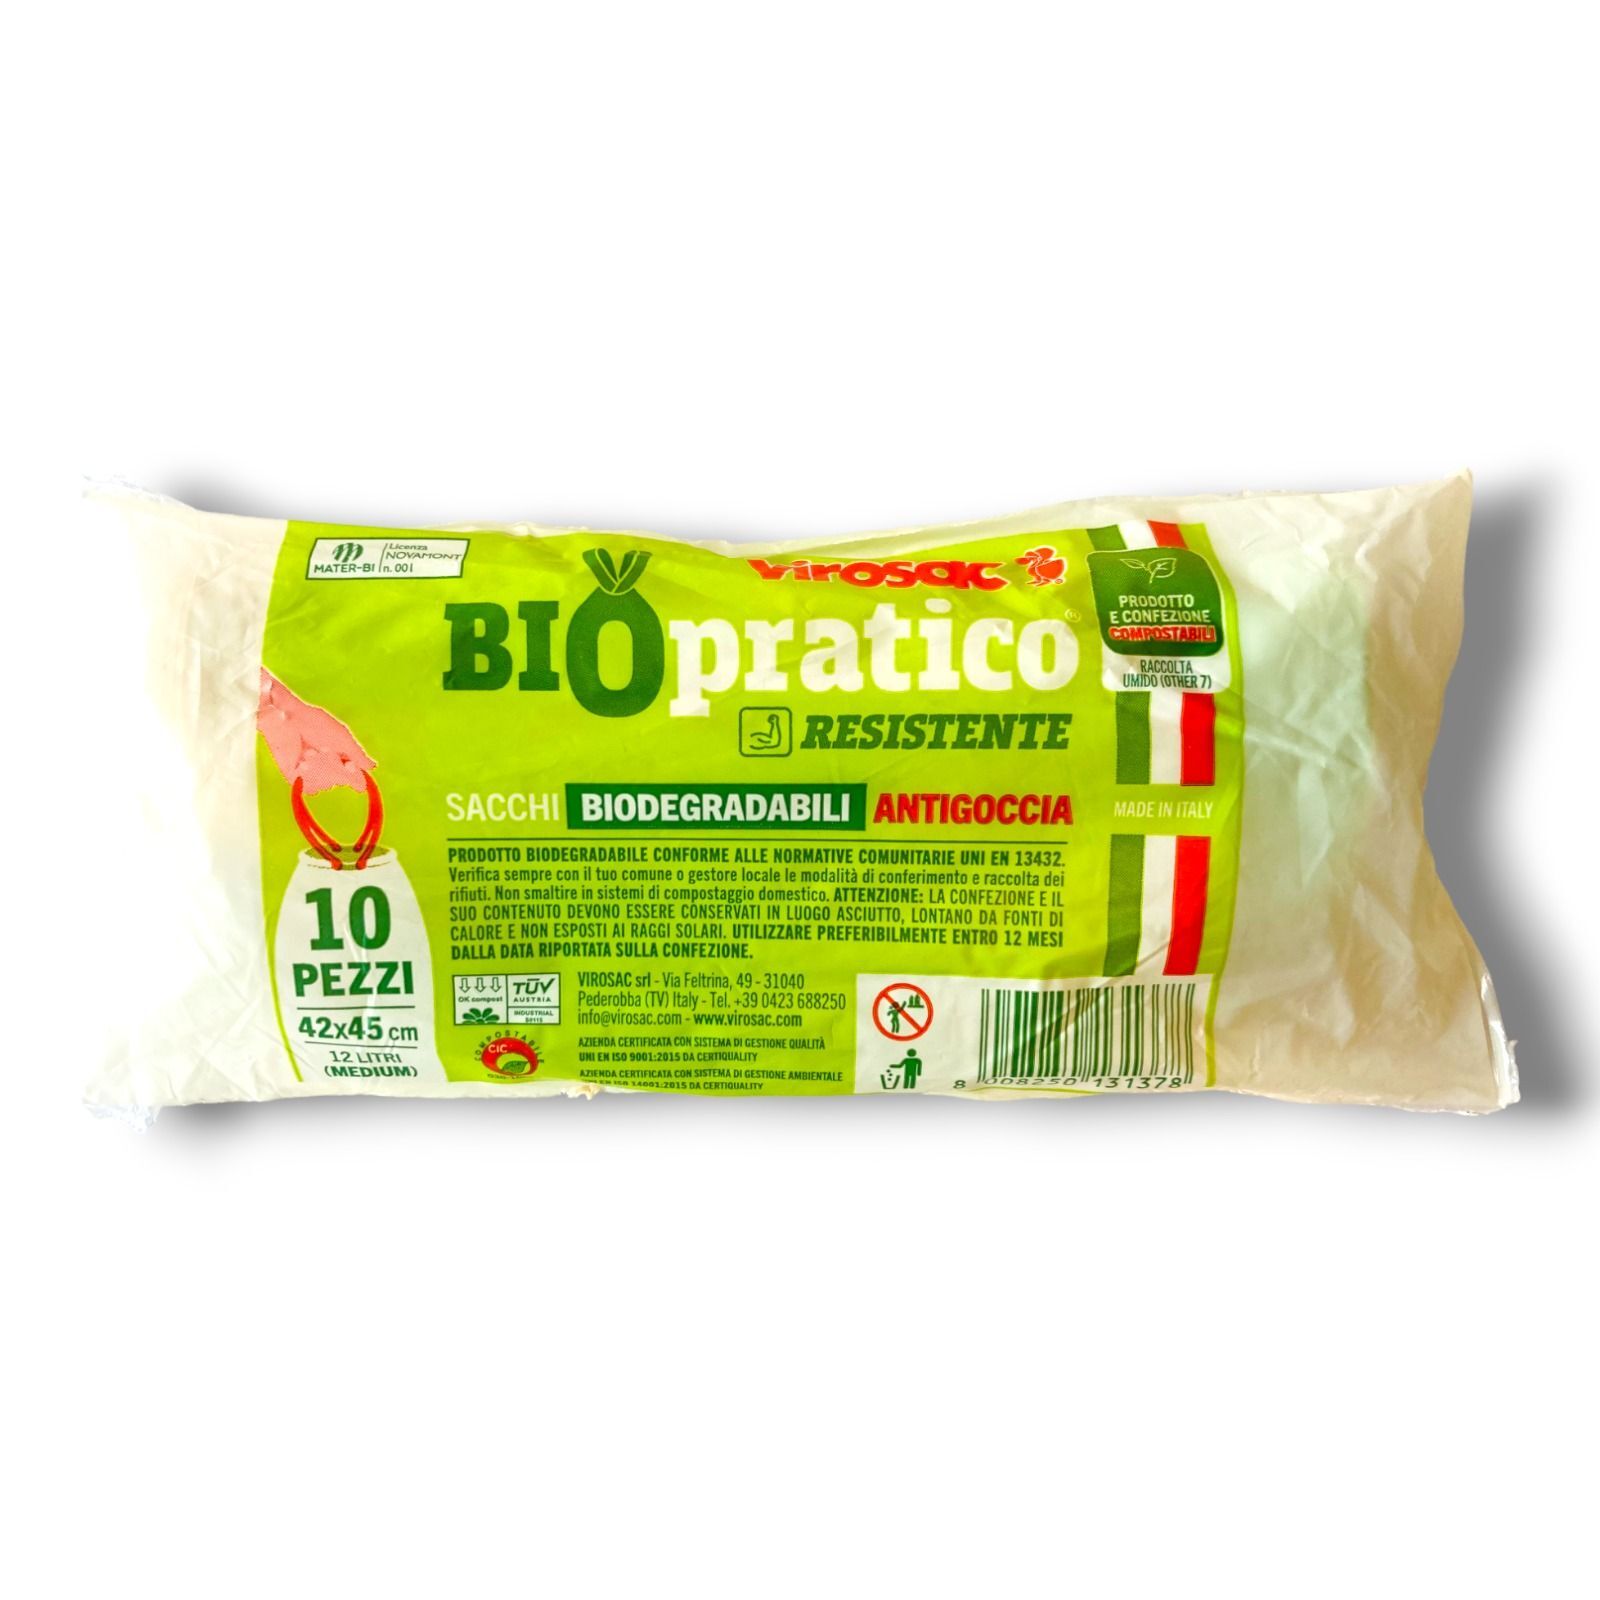 Sacchi Biodegradabili con Maniglie - BioPratico